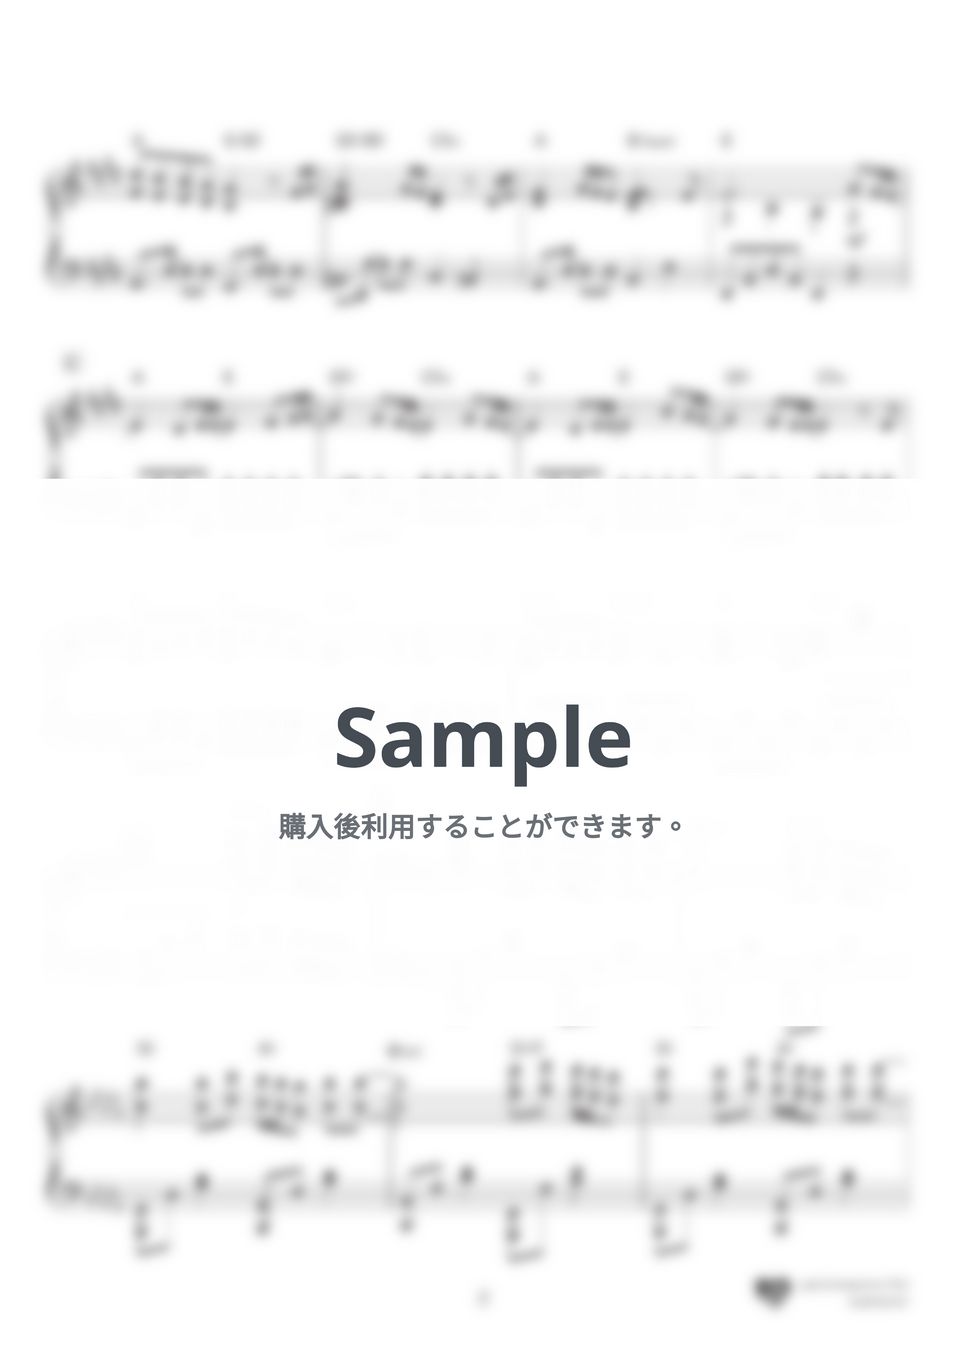 嵐 - カイト (みんなのうた放送曲,NHK2020ソング) by 楽譜仕事人_内田ゆう子